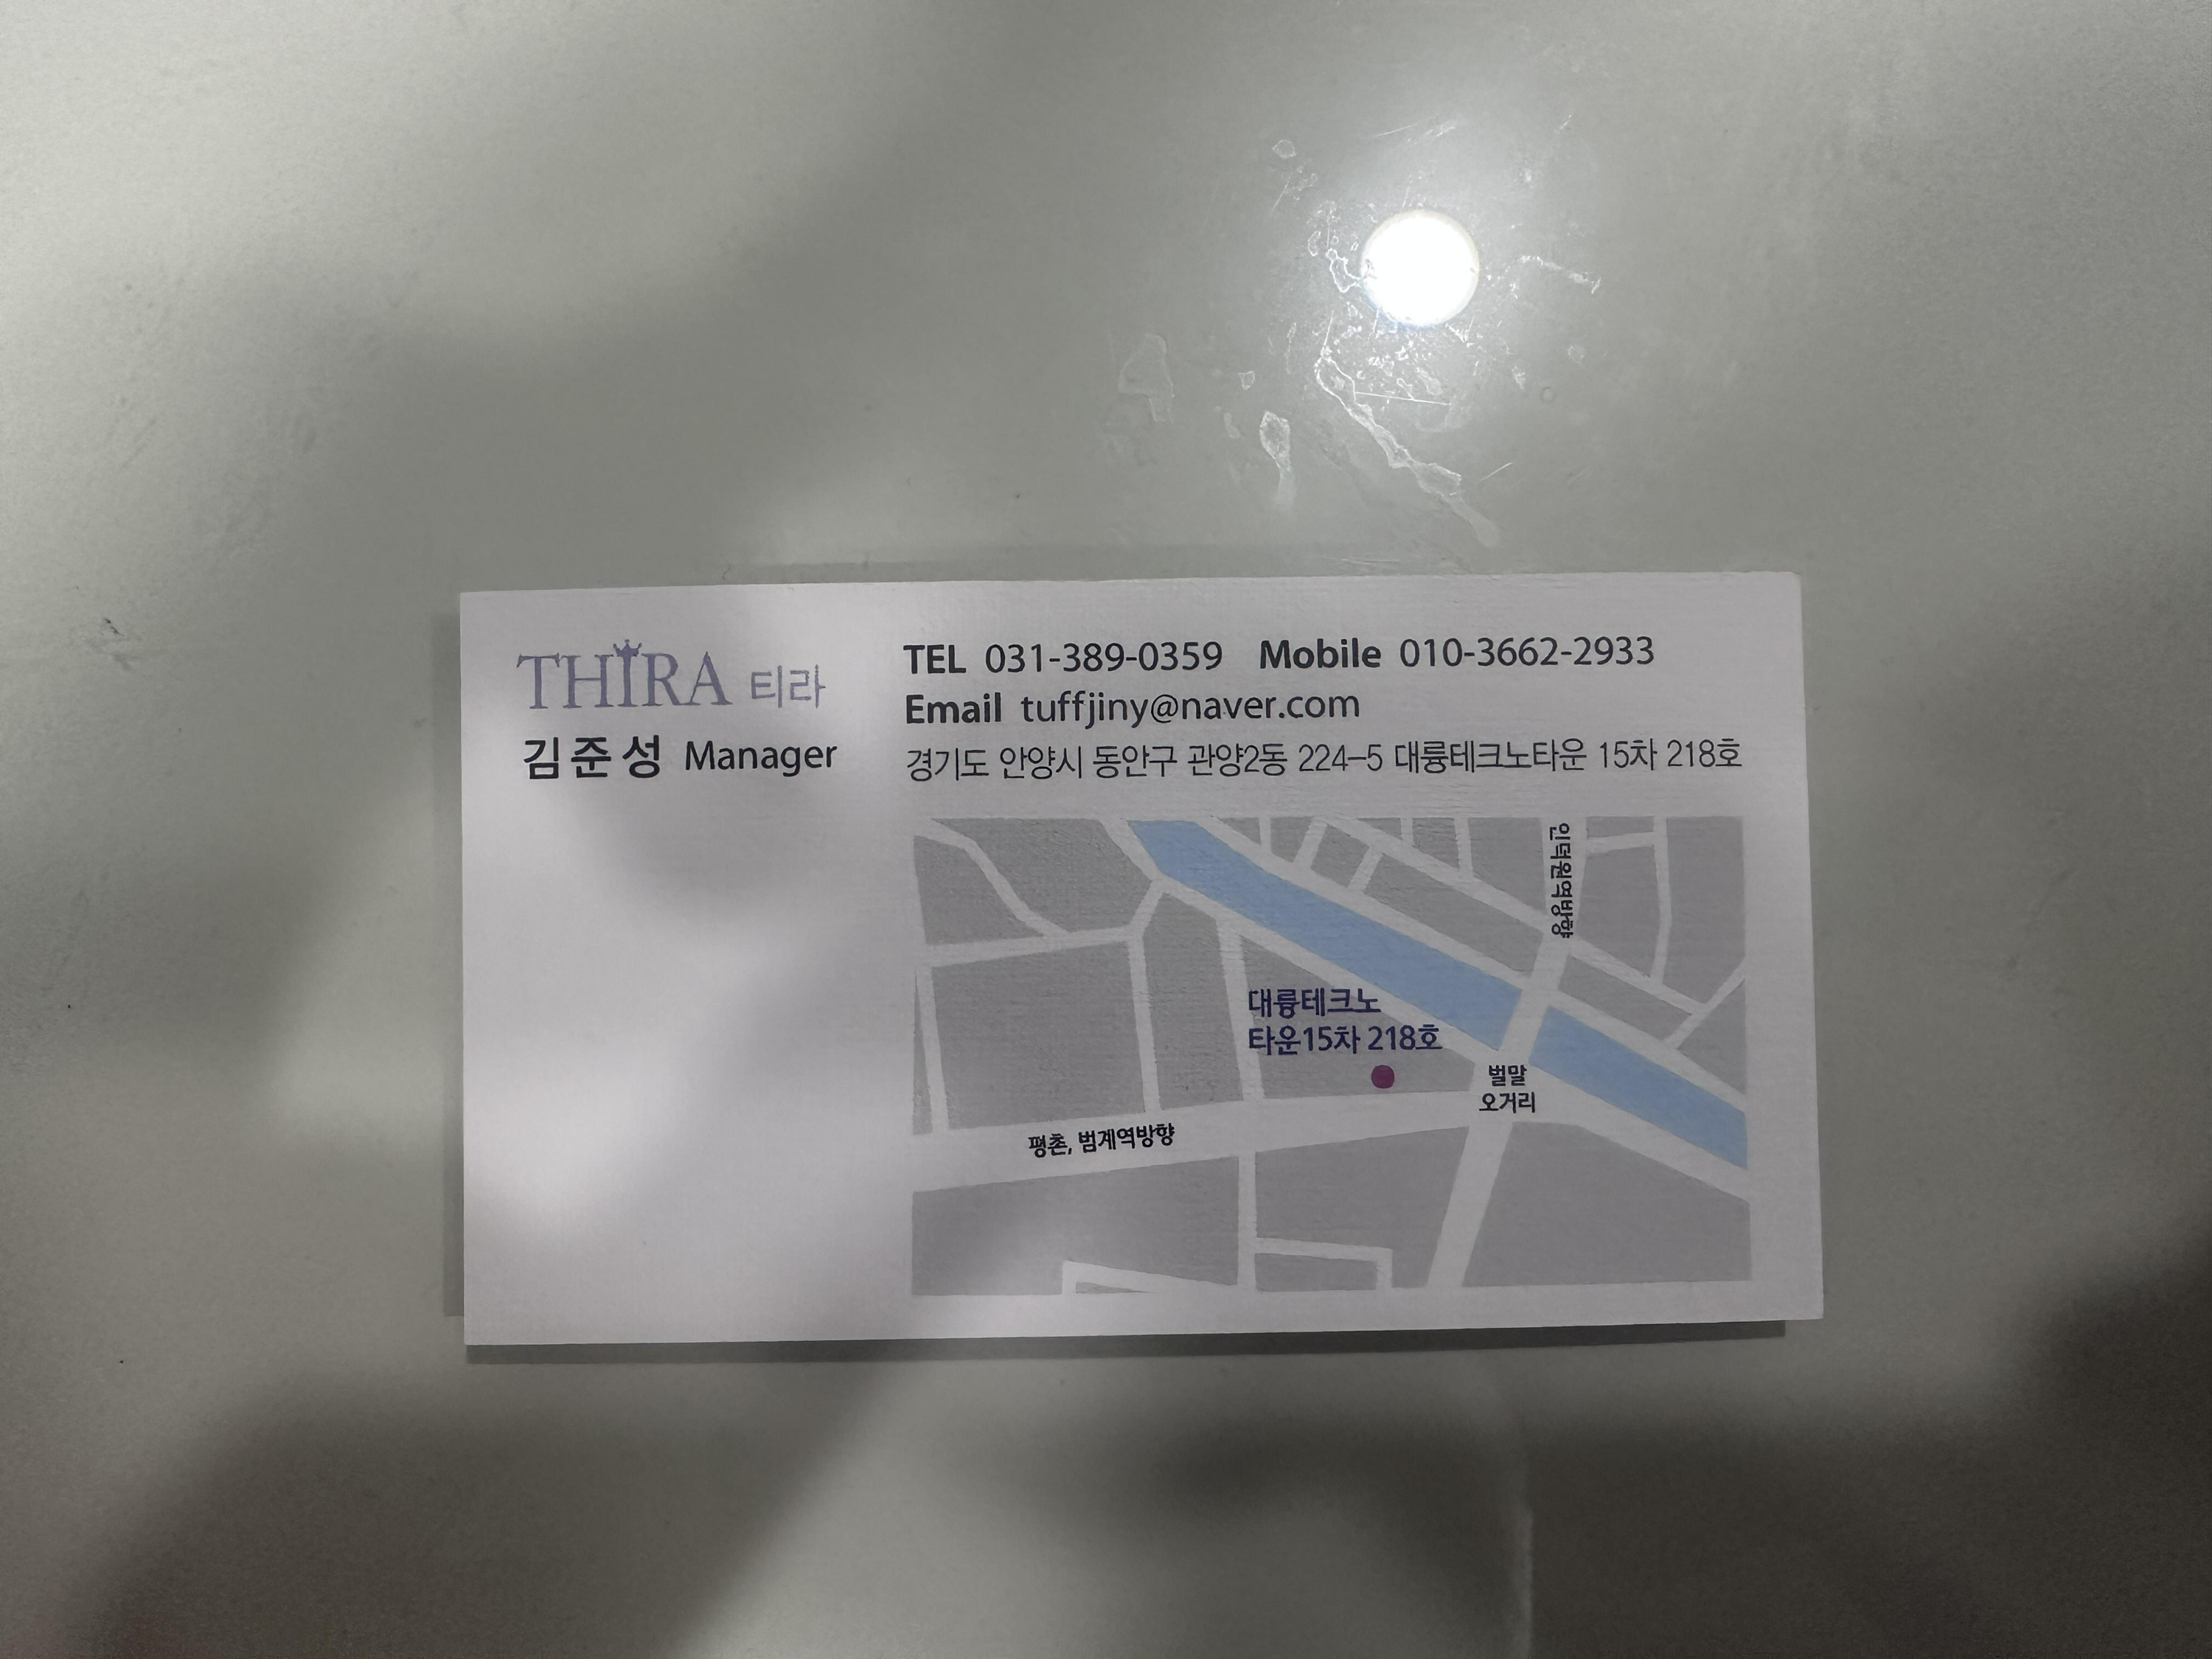 티라 관장님 명함